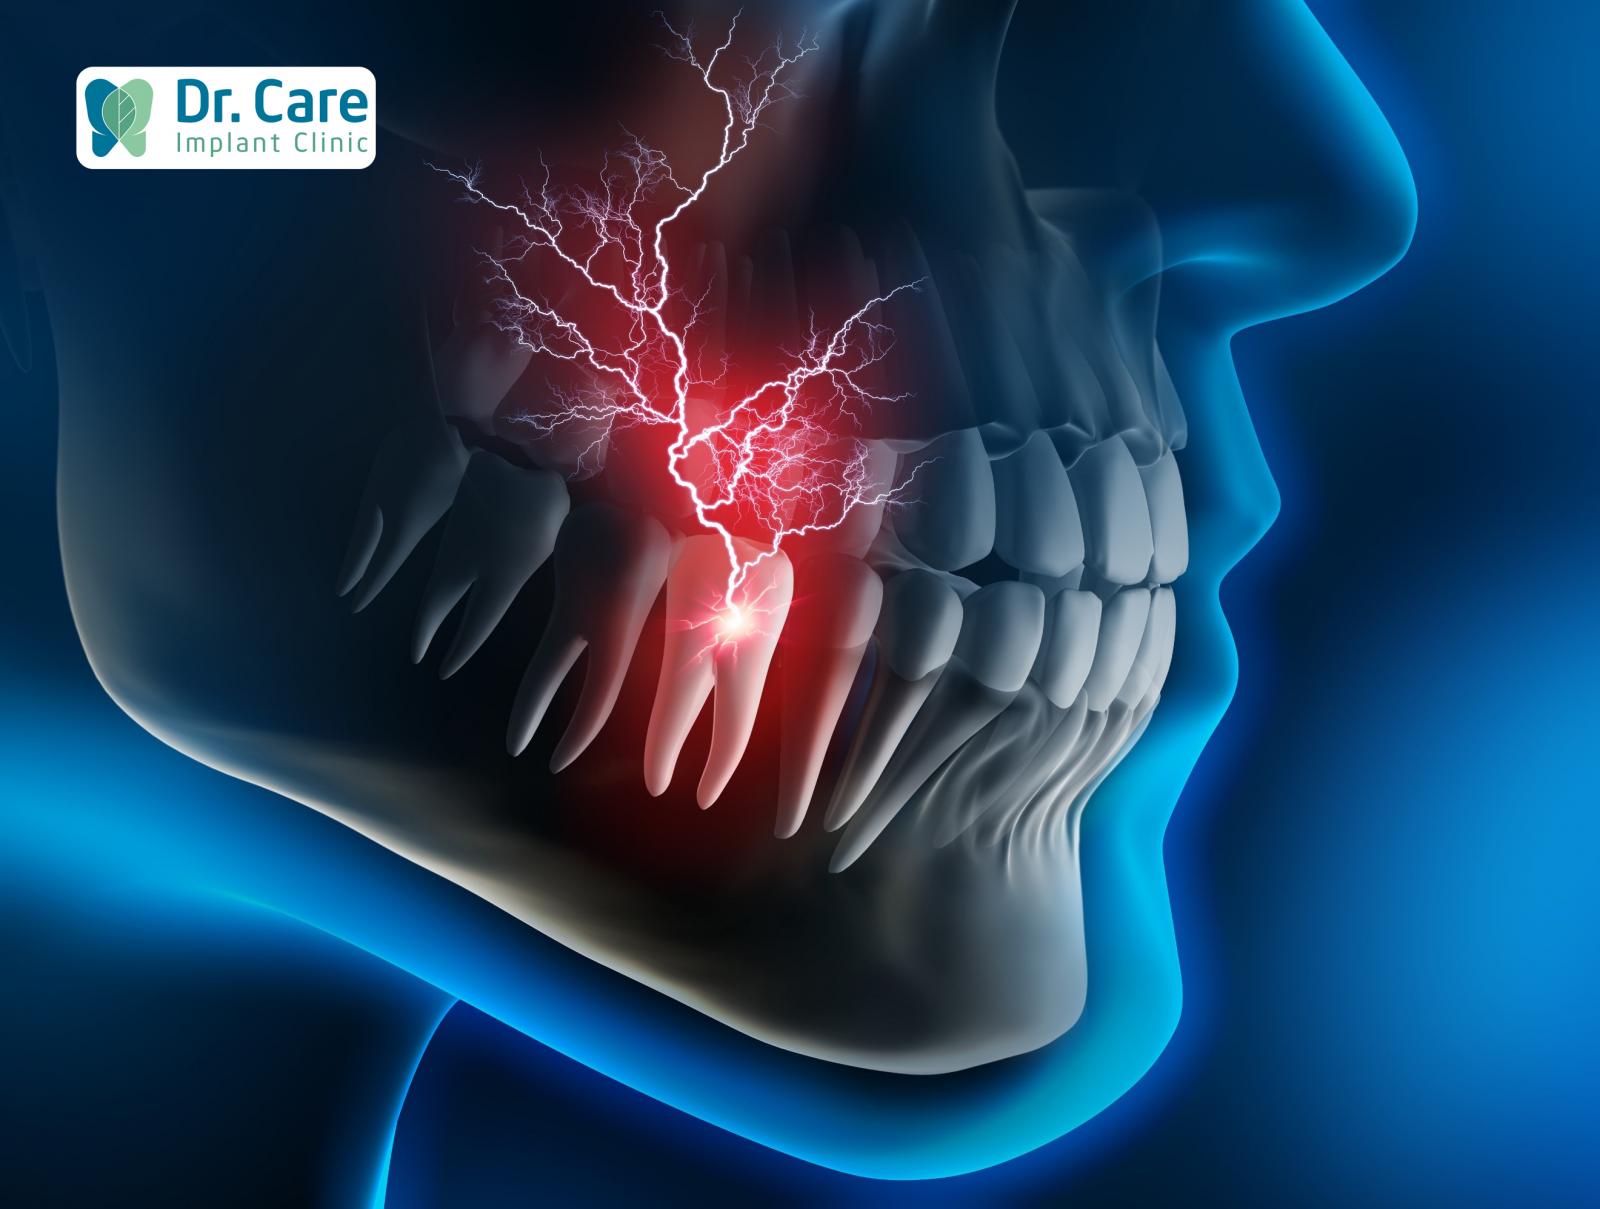 Đau răng trong chẩn đoán nha khoa là gì? Tại sao cơn đau răng lại khó chịu?